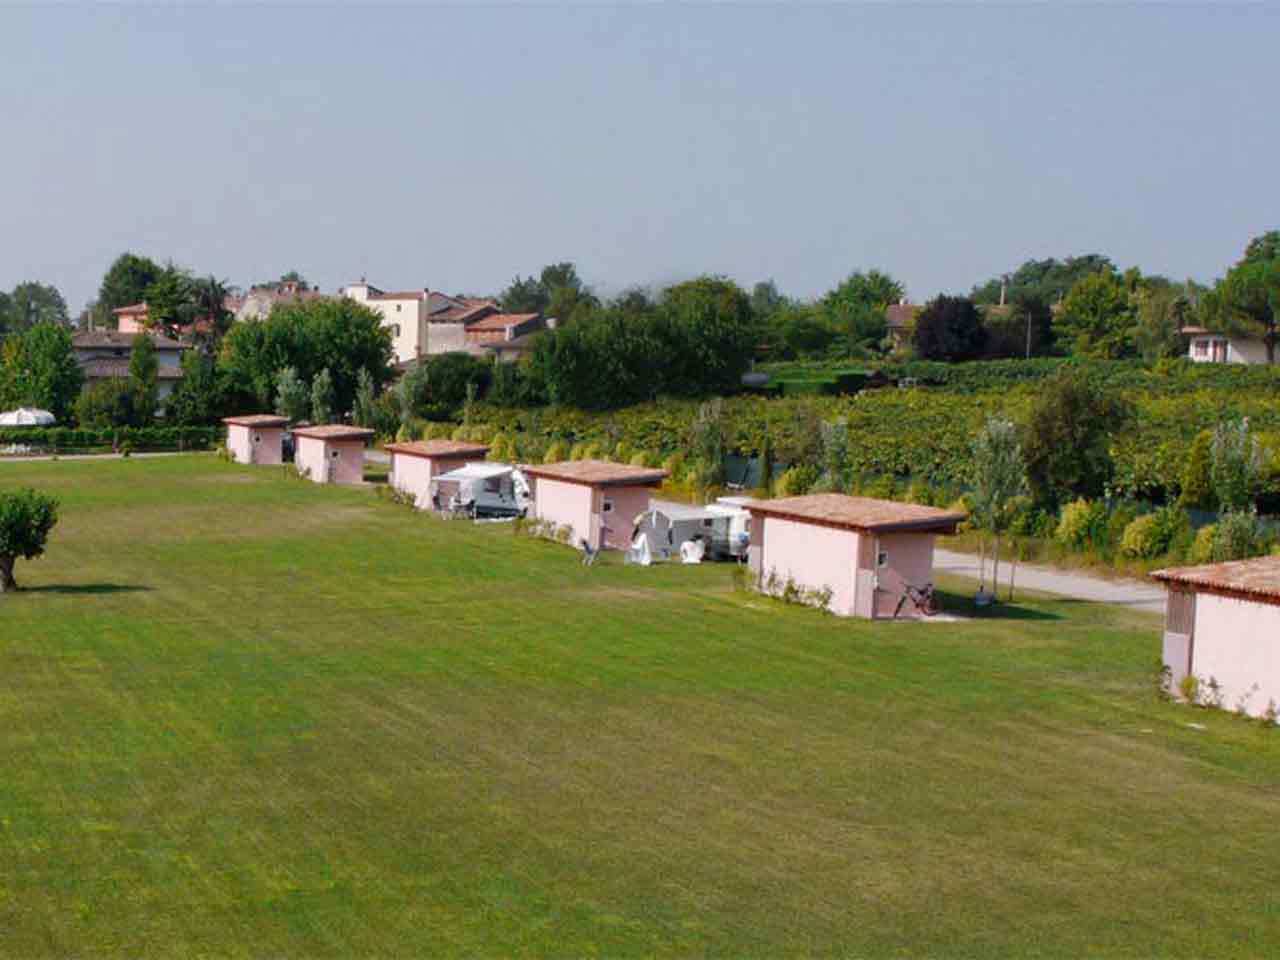 Veneto in Camper, i campeggi da non perdere: l’Agricamping Borghetto a Borghetto di Valeggio sul Mincio (VR).